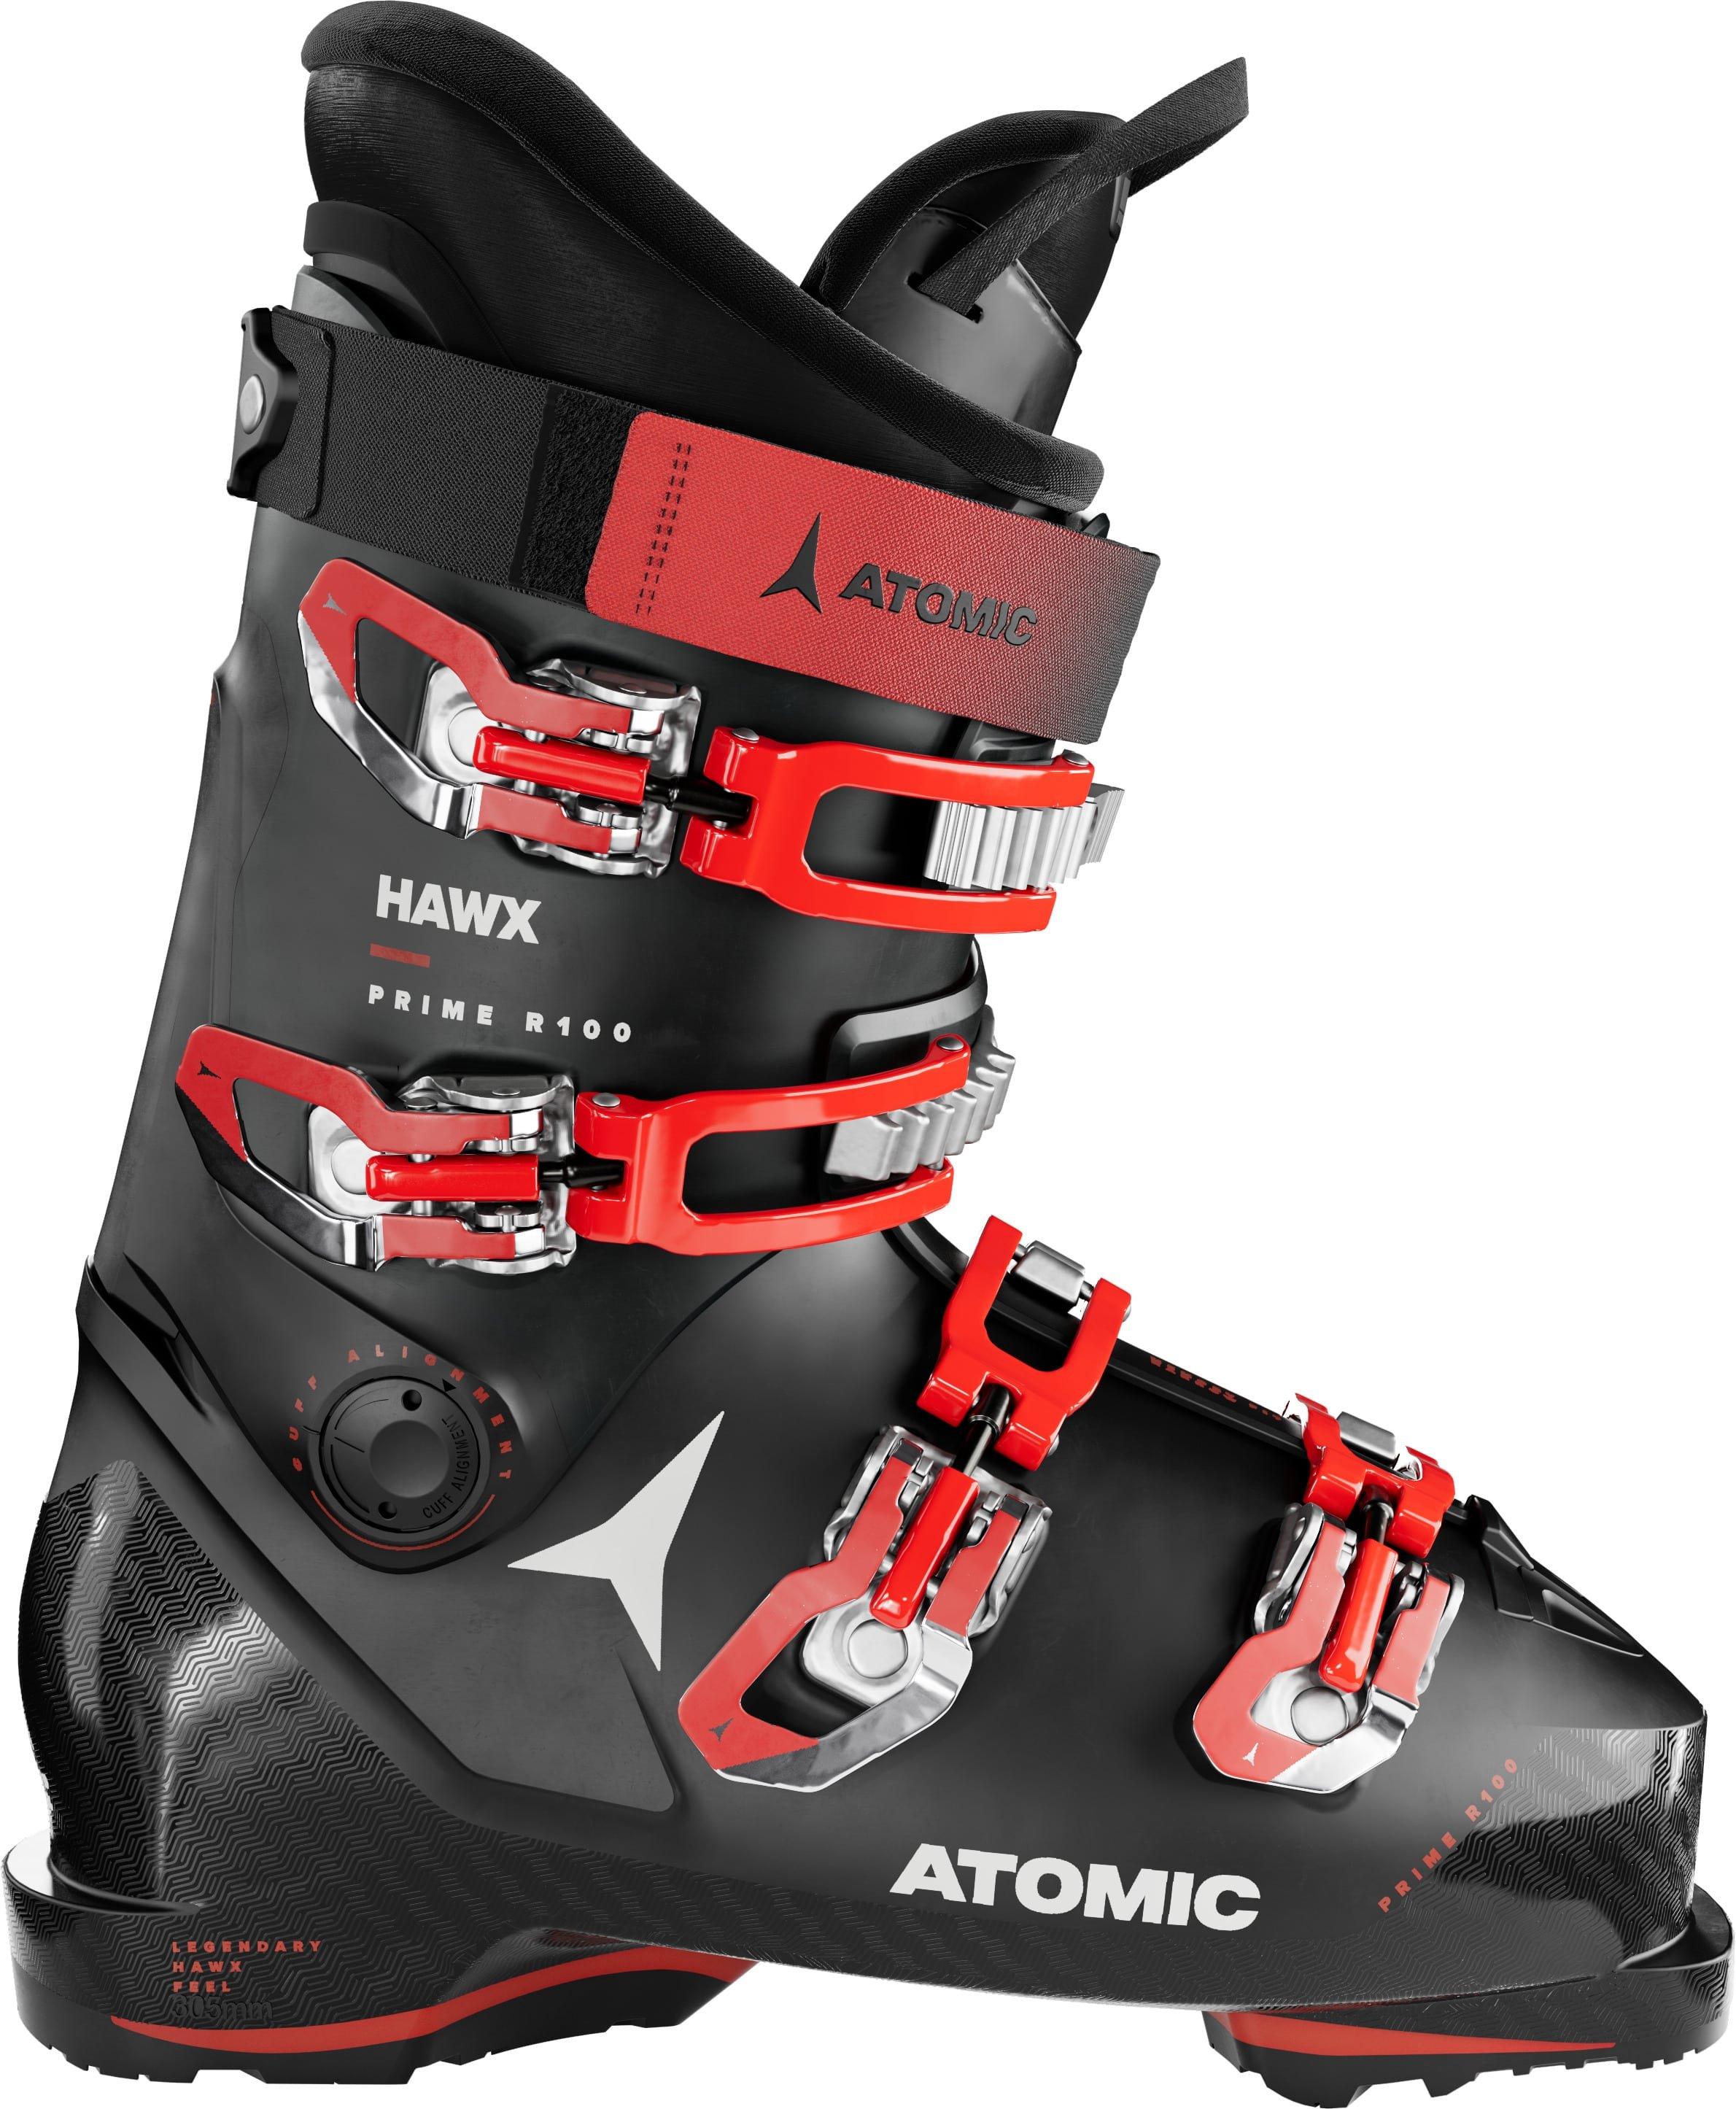 Pánske lyžiarky Atomic Hawx Prime R100 GW Veľkosť: 30 cm